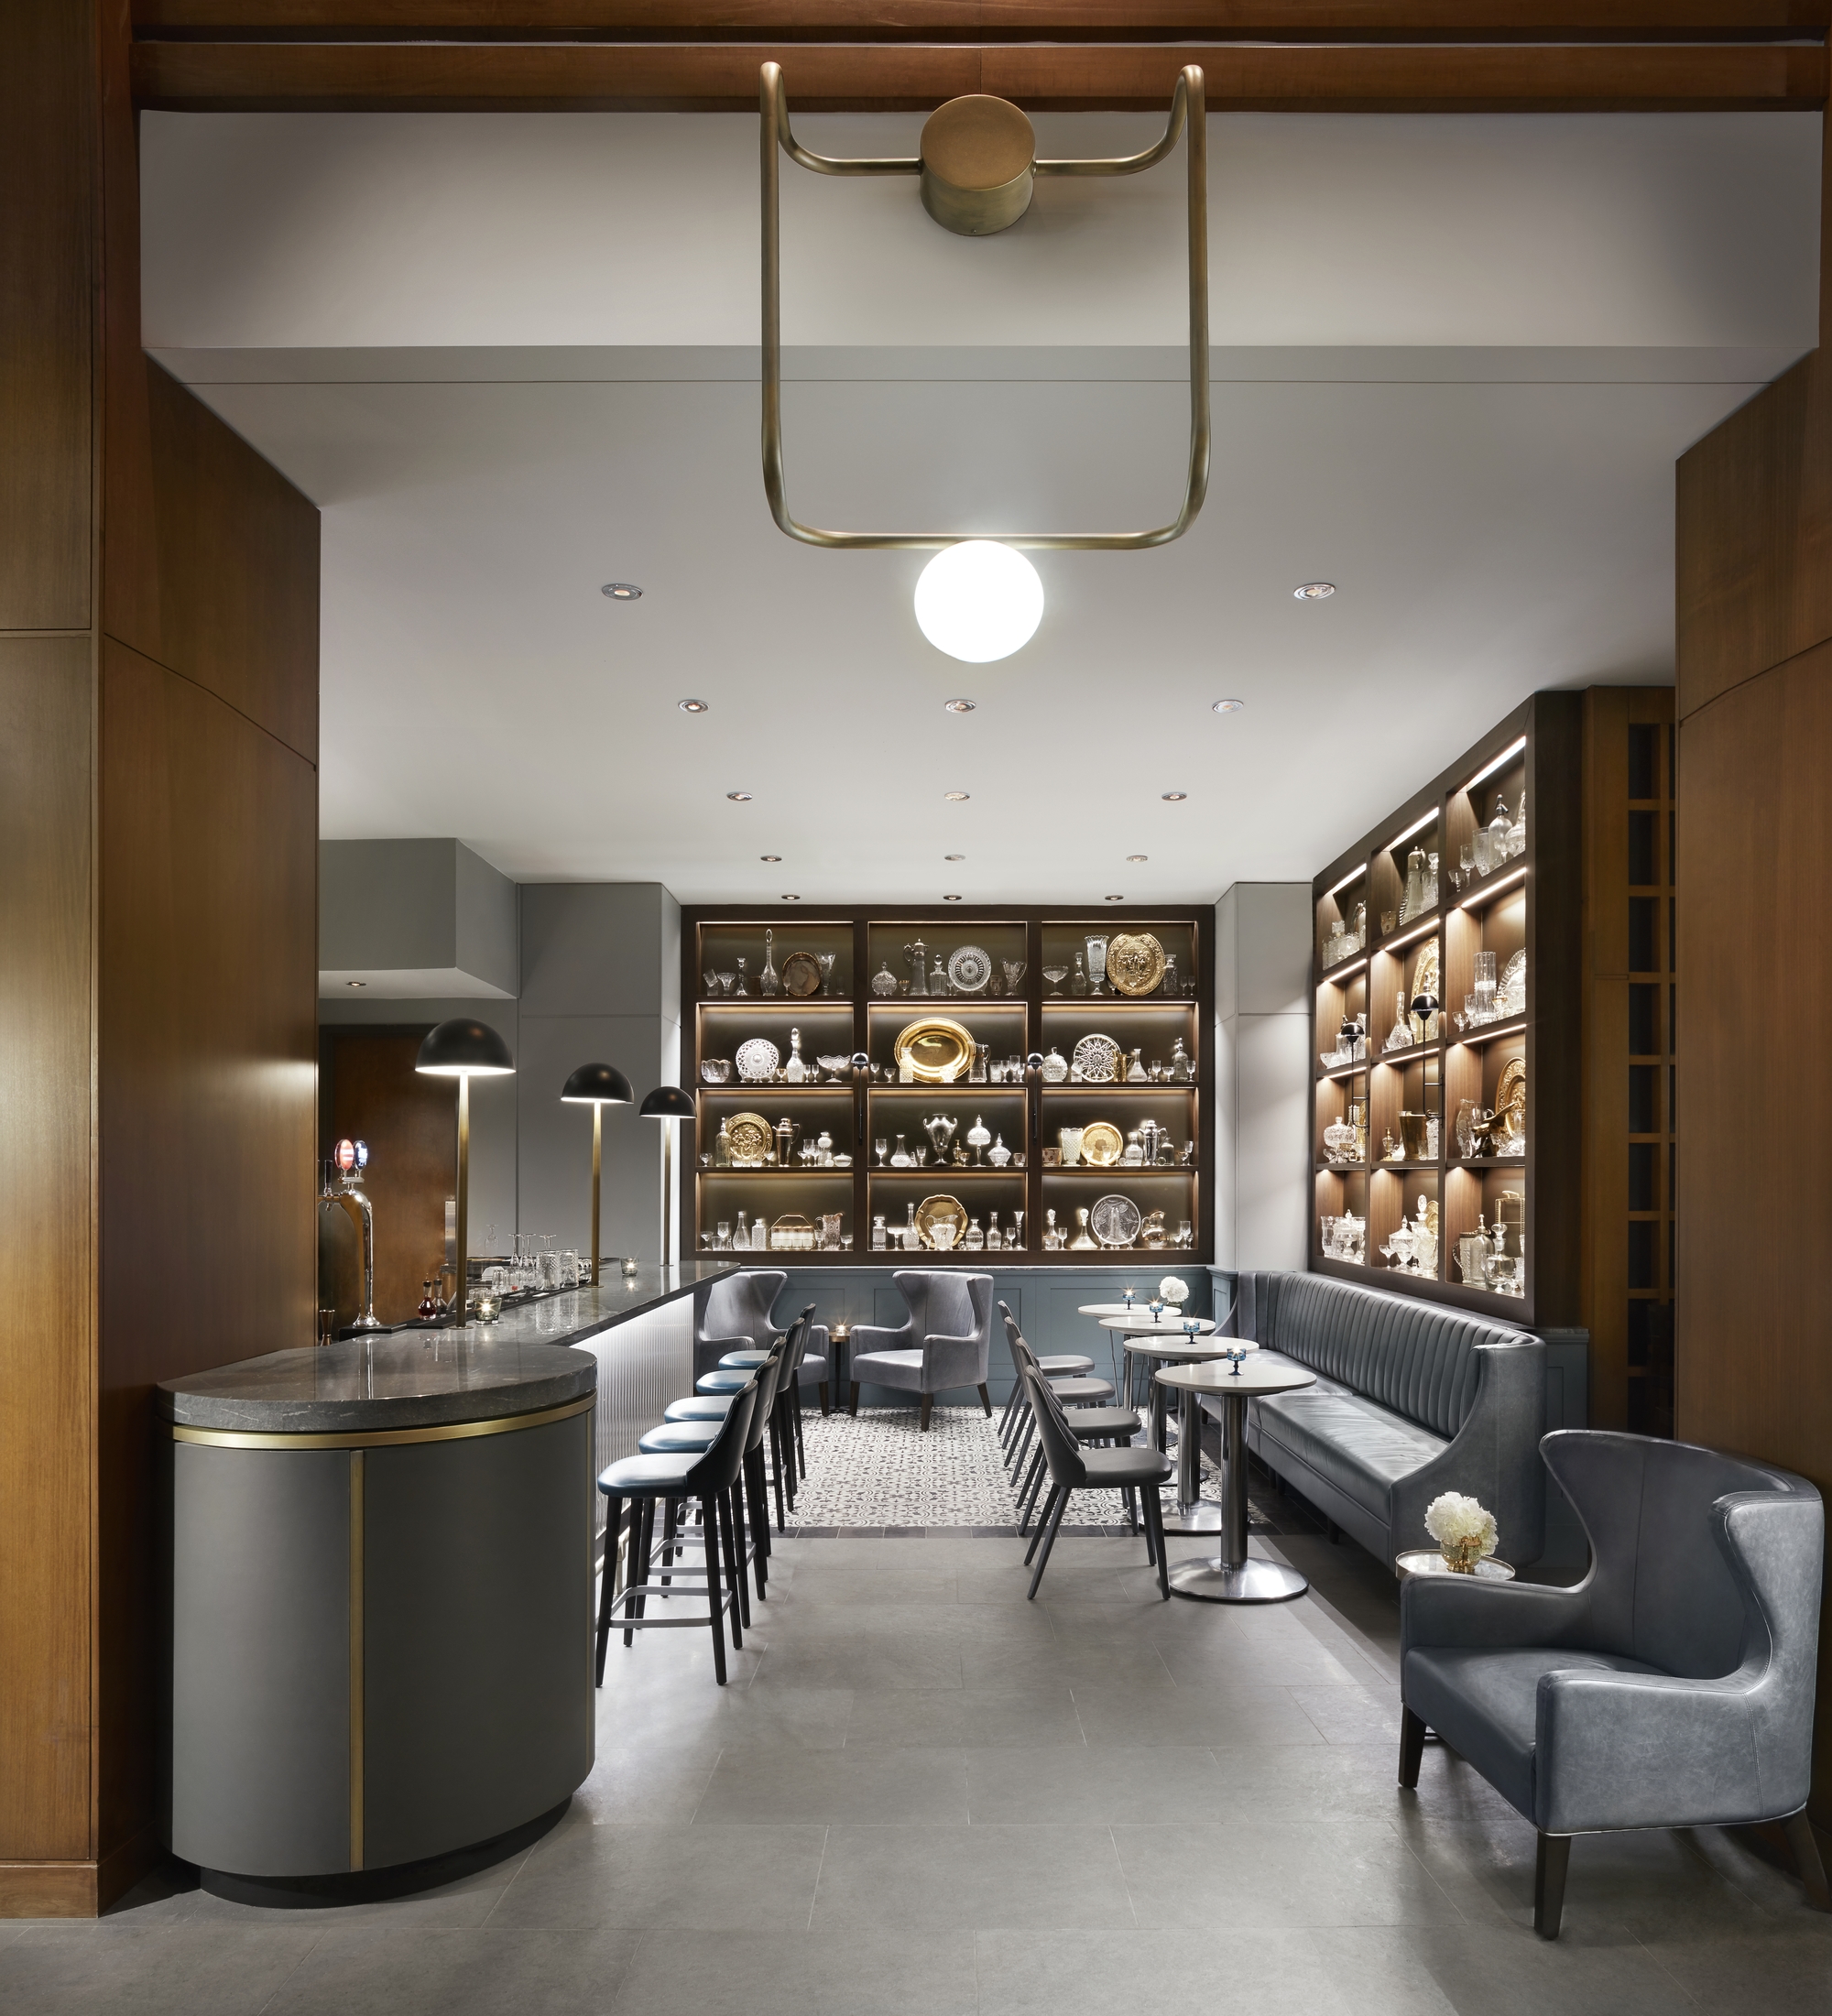 多伦多美世Le Germain酒店的Victor餐厅|ART-Arrakis | 建筑室内设计的创新与灵感